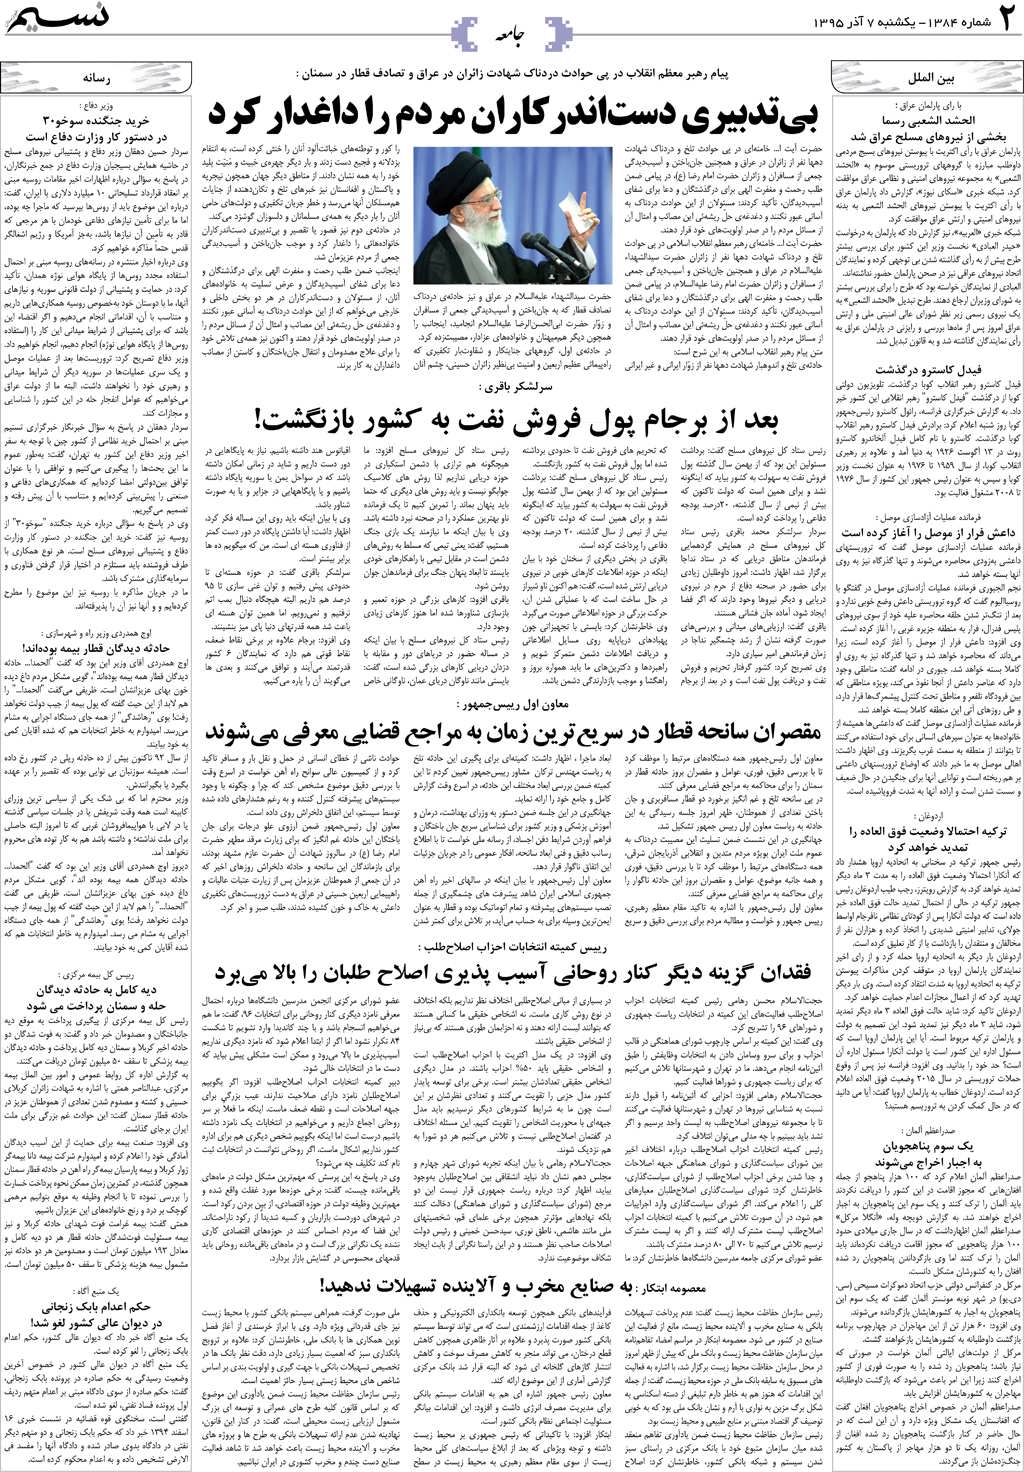 صفحه جامعه روزنامه نسیم شماره 1384